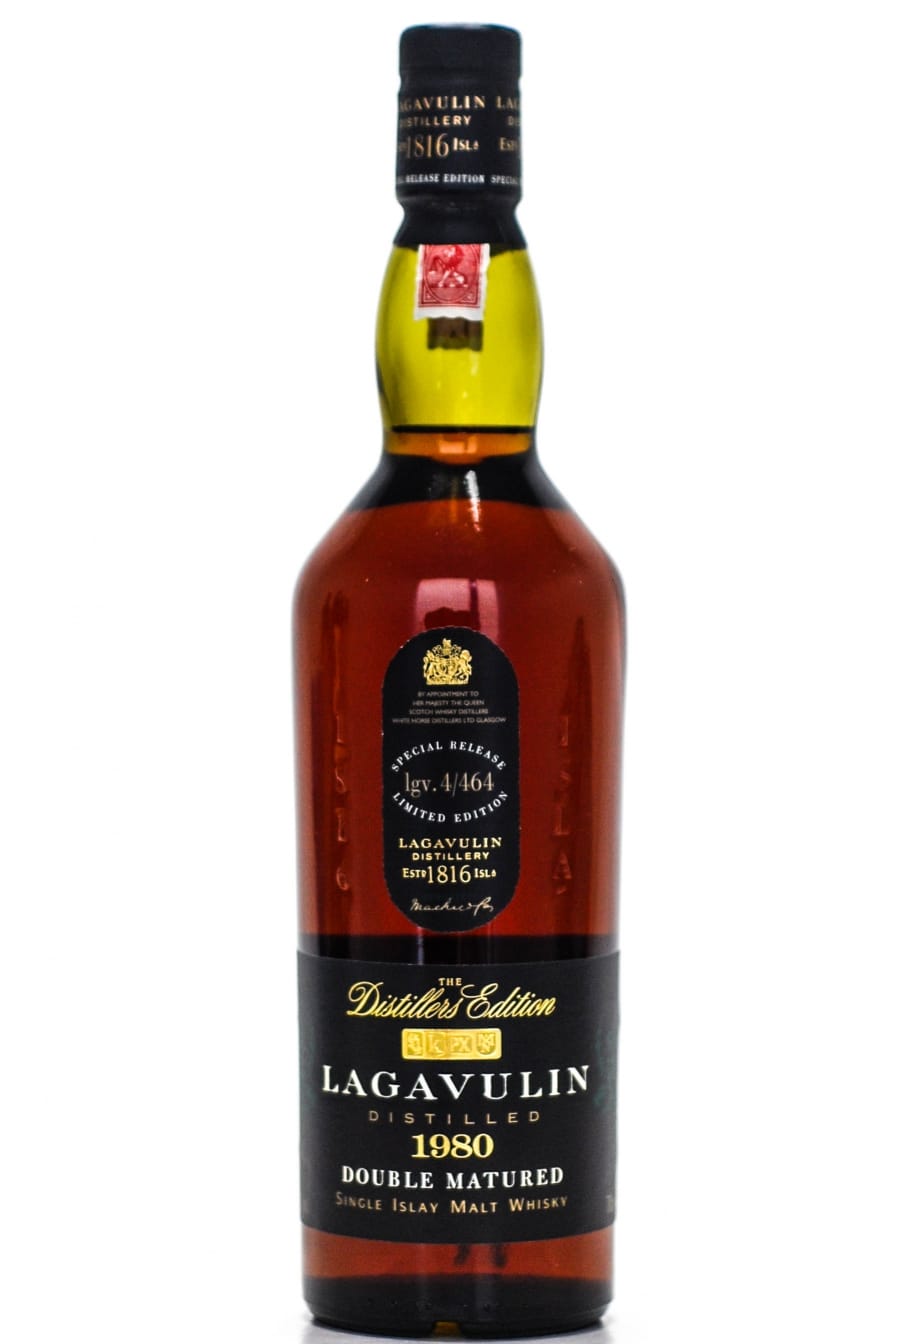 Lagavulin - 1980 Distillers Edition lgv.4/464 43% 1980 NO OC INCLUDED!